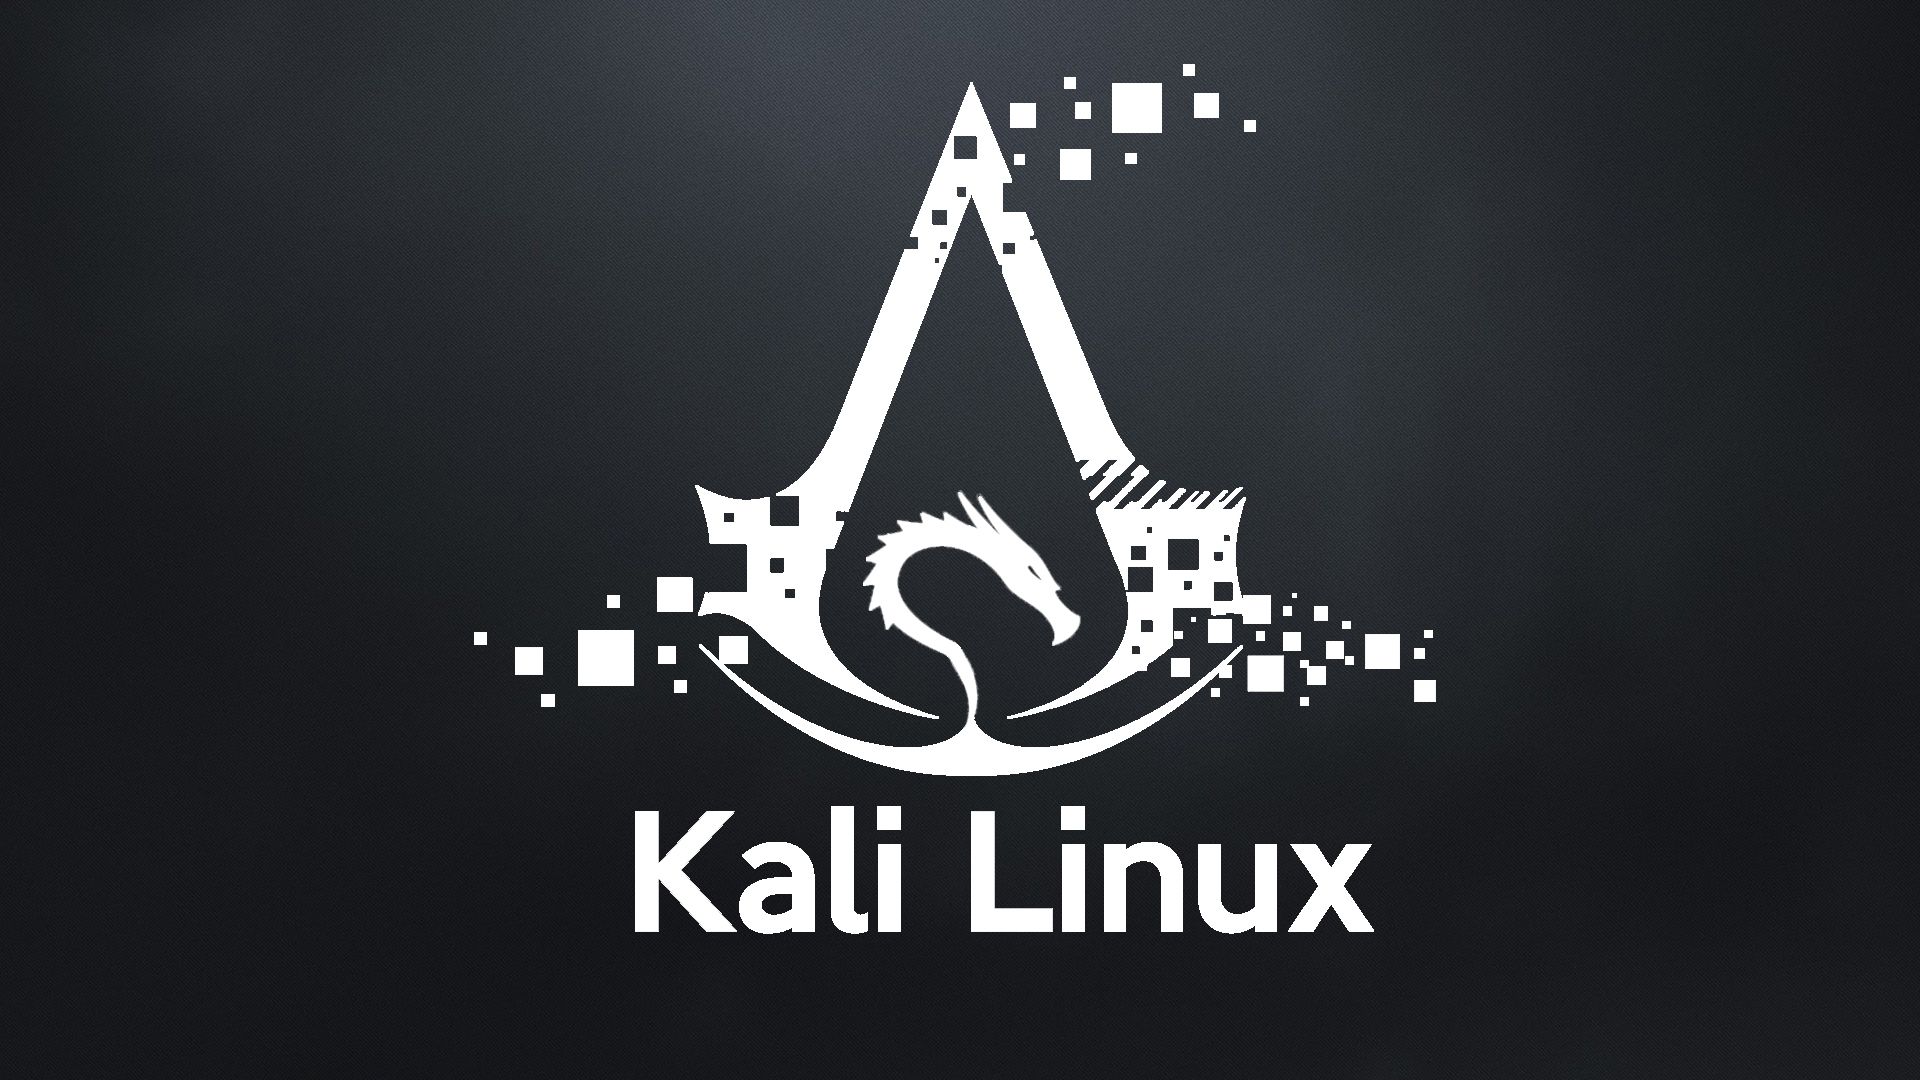 kali linux custom image download